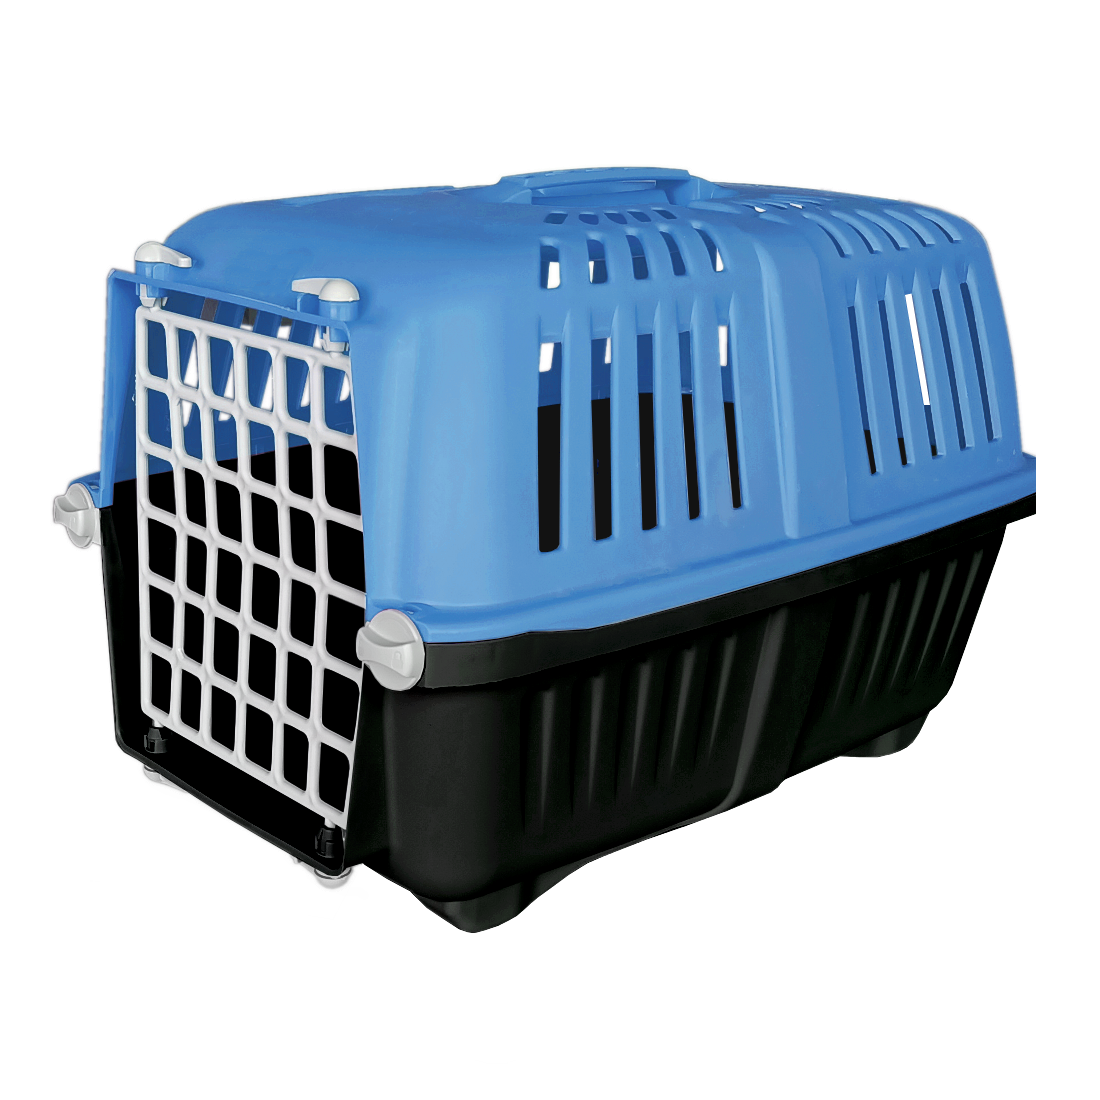 Sert Plastik Kedi Köpek Taşıma Çantası 28 X 44 X 32 cm Mavi